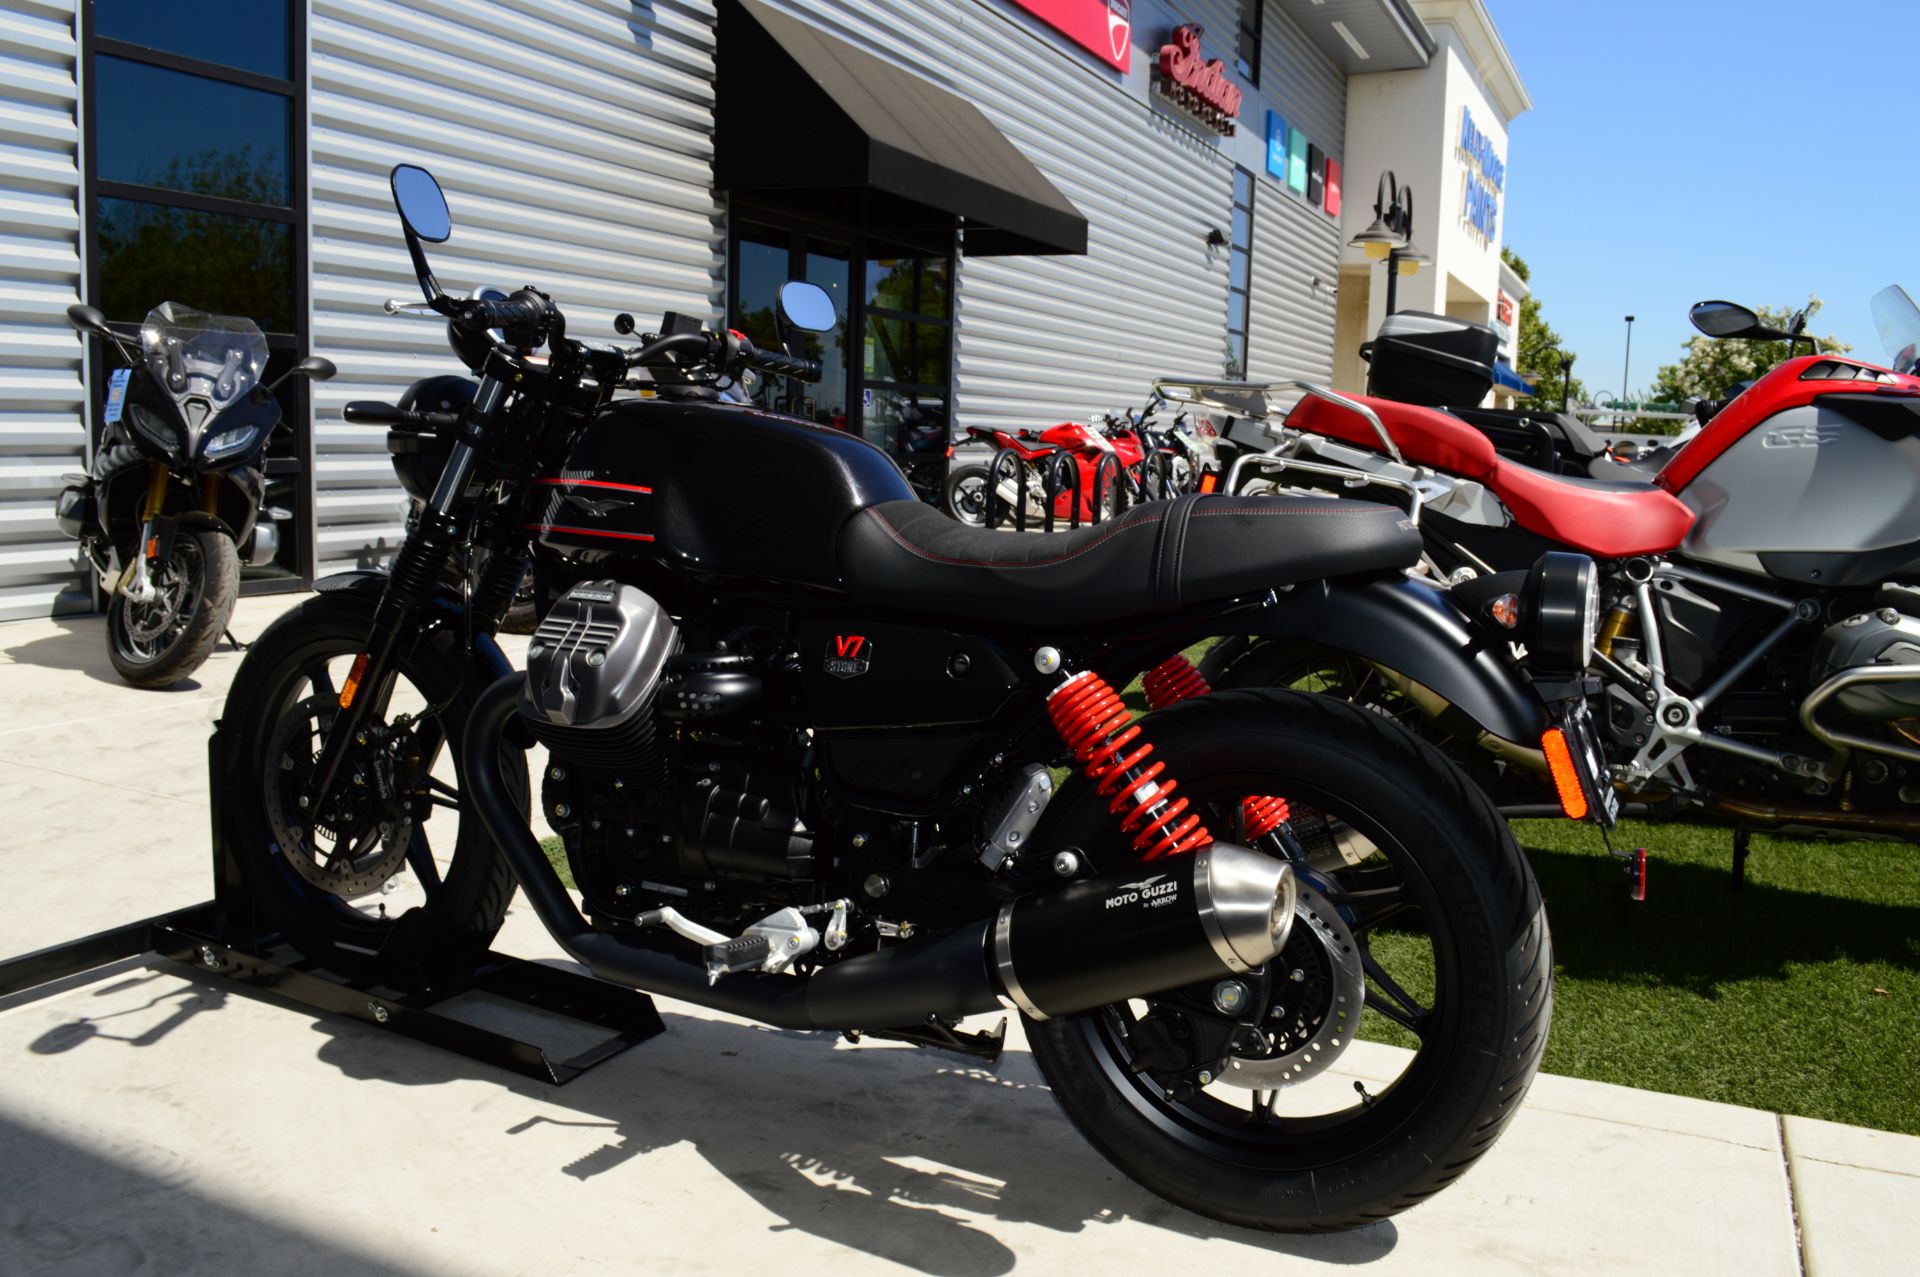 2023 Moto Guzzi V7 Stone Special Edition in Elk Grove, California - Photo 5